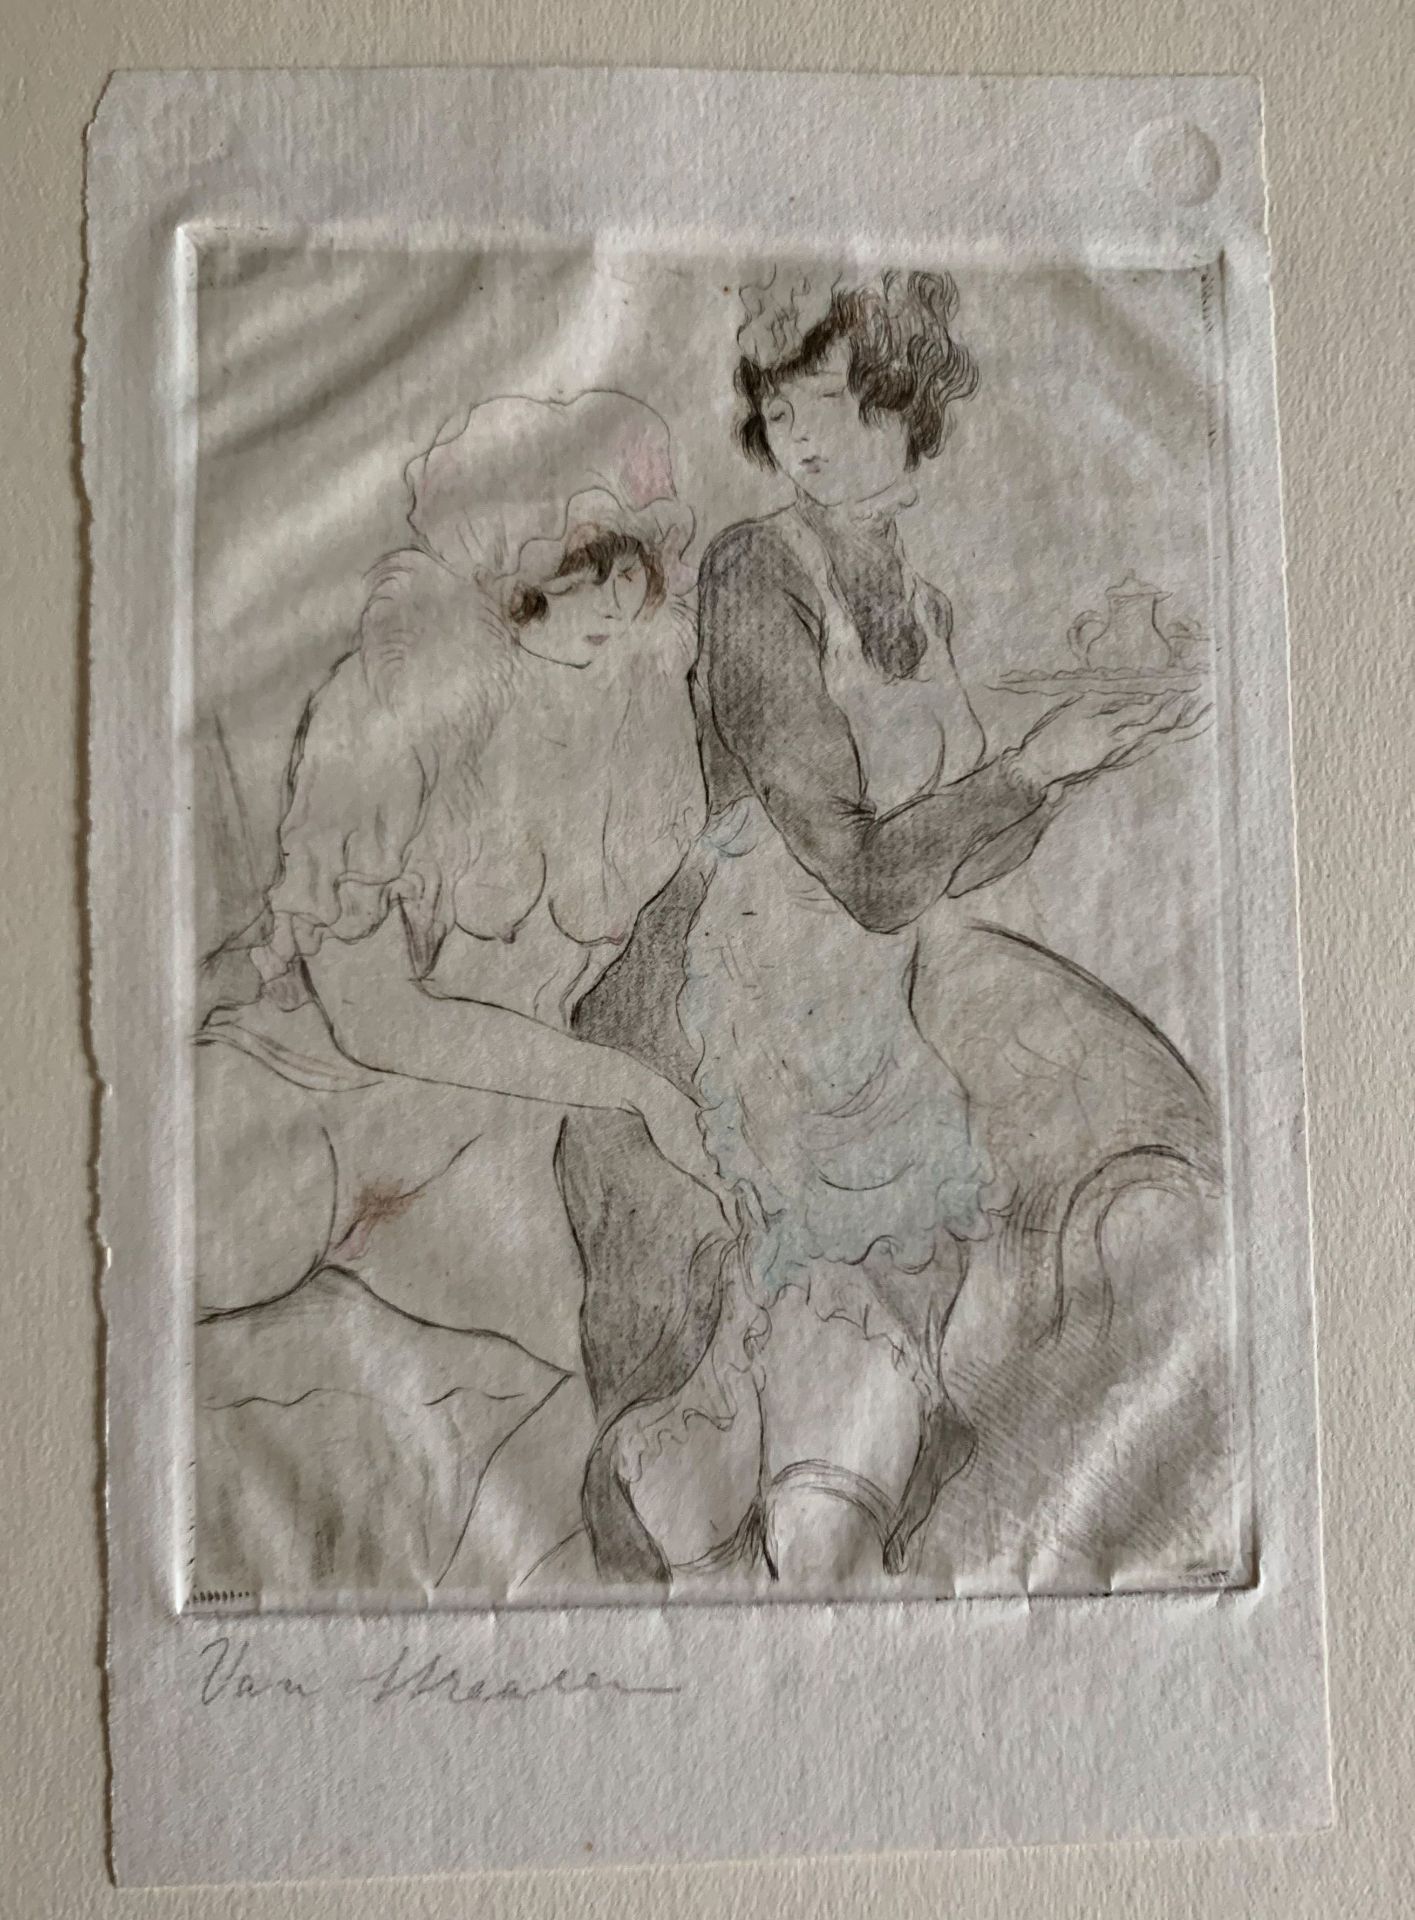 Erotik / Erotica: Van Straaten, 2 Mädchen beim Sex, Radierung, handkoloriert, handsigniert, 16 x 12 